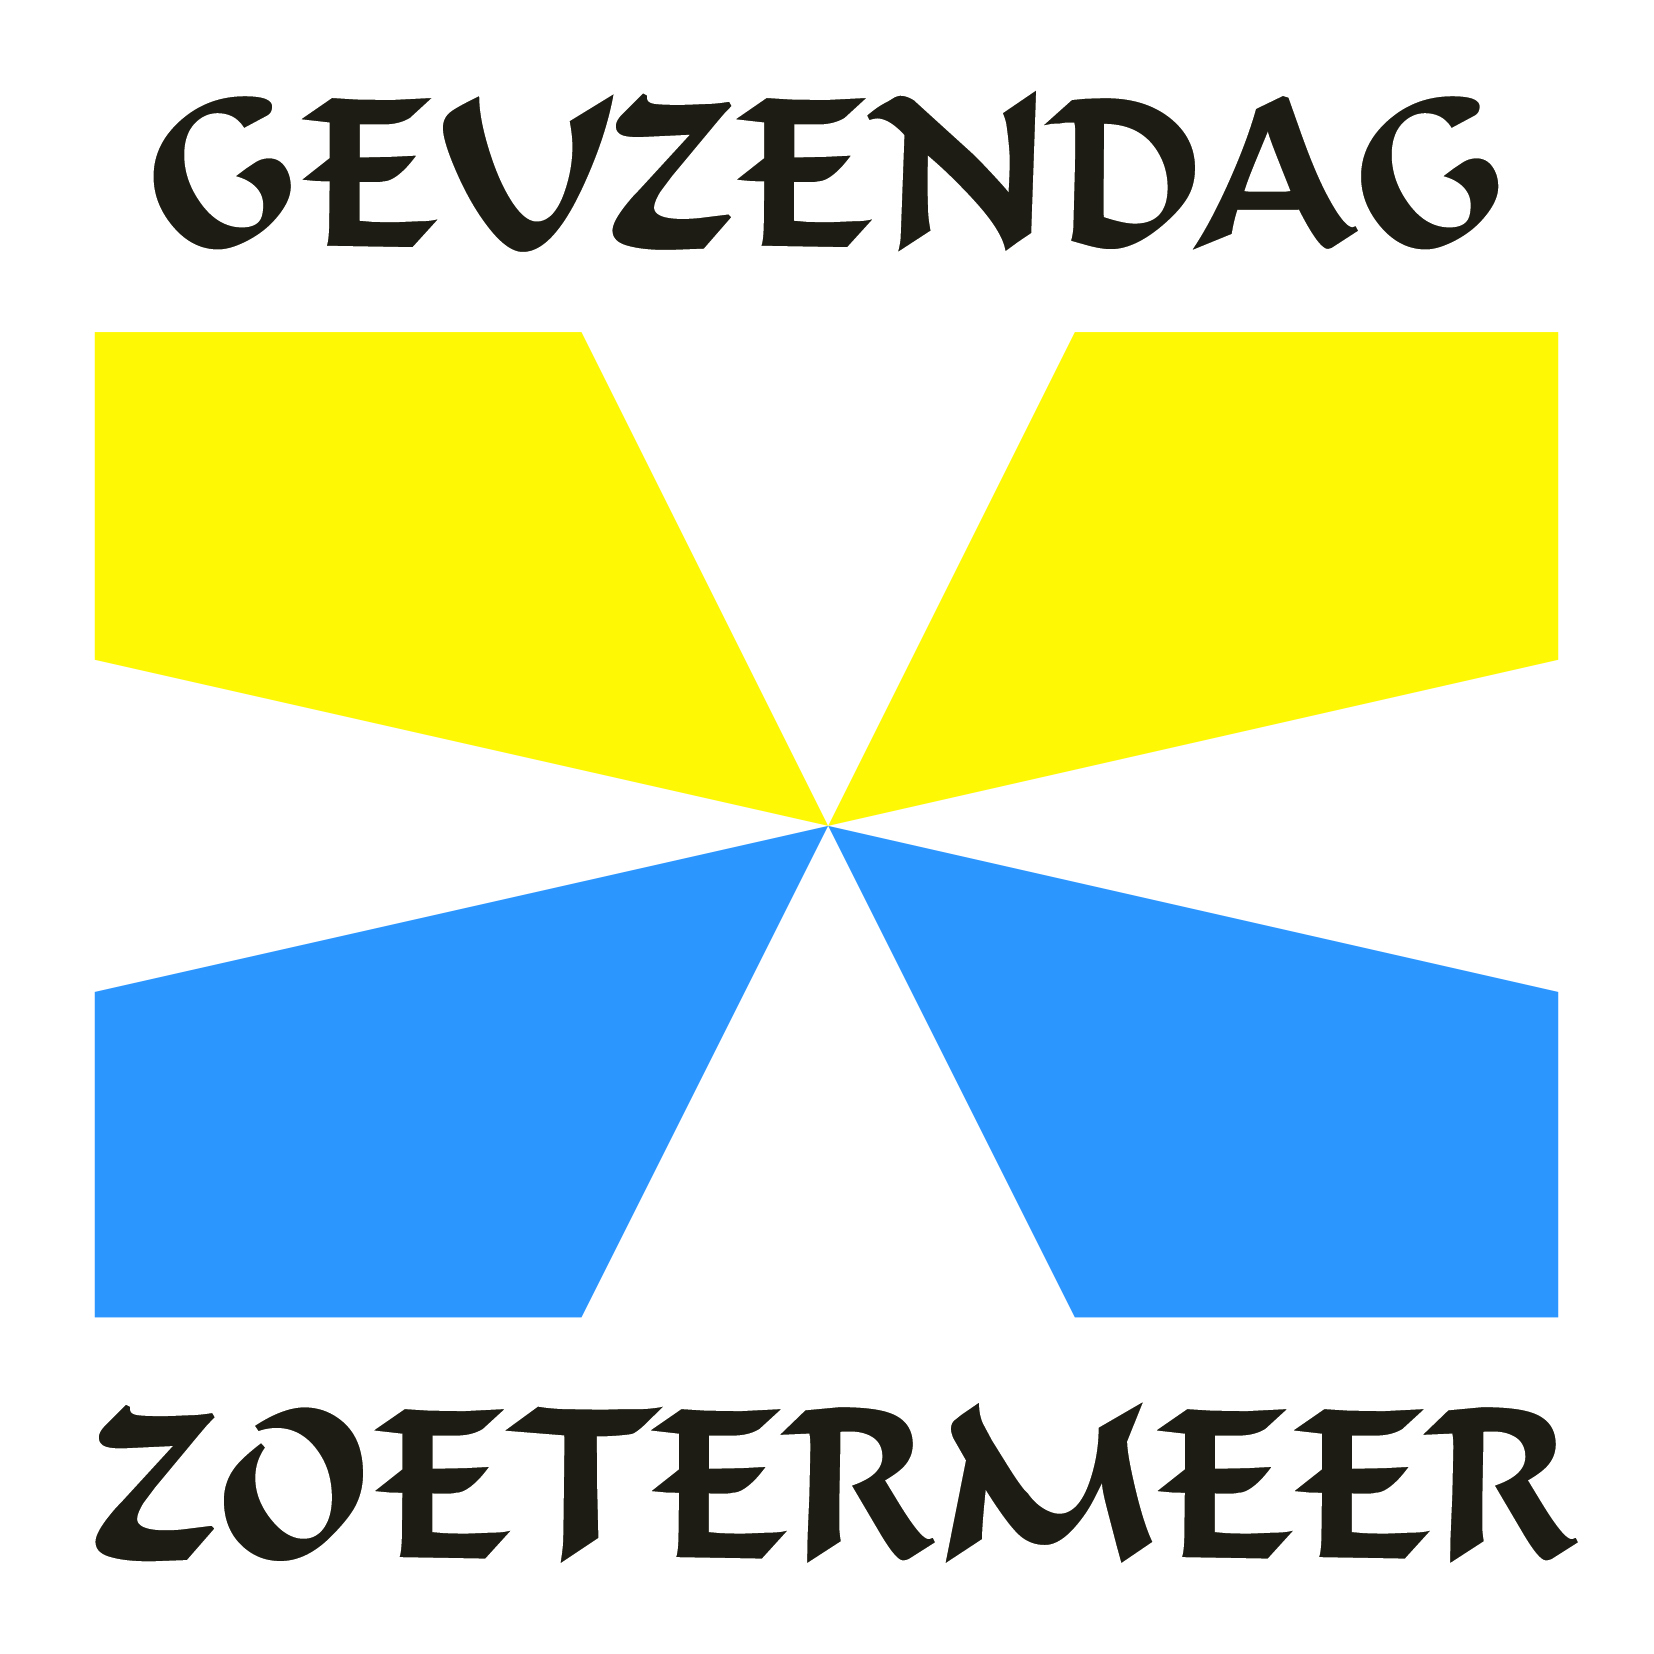 GRIZZLIES @ Geuzendag Zoetermeer